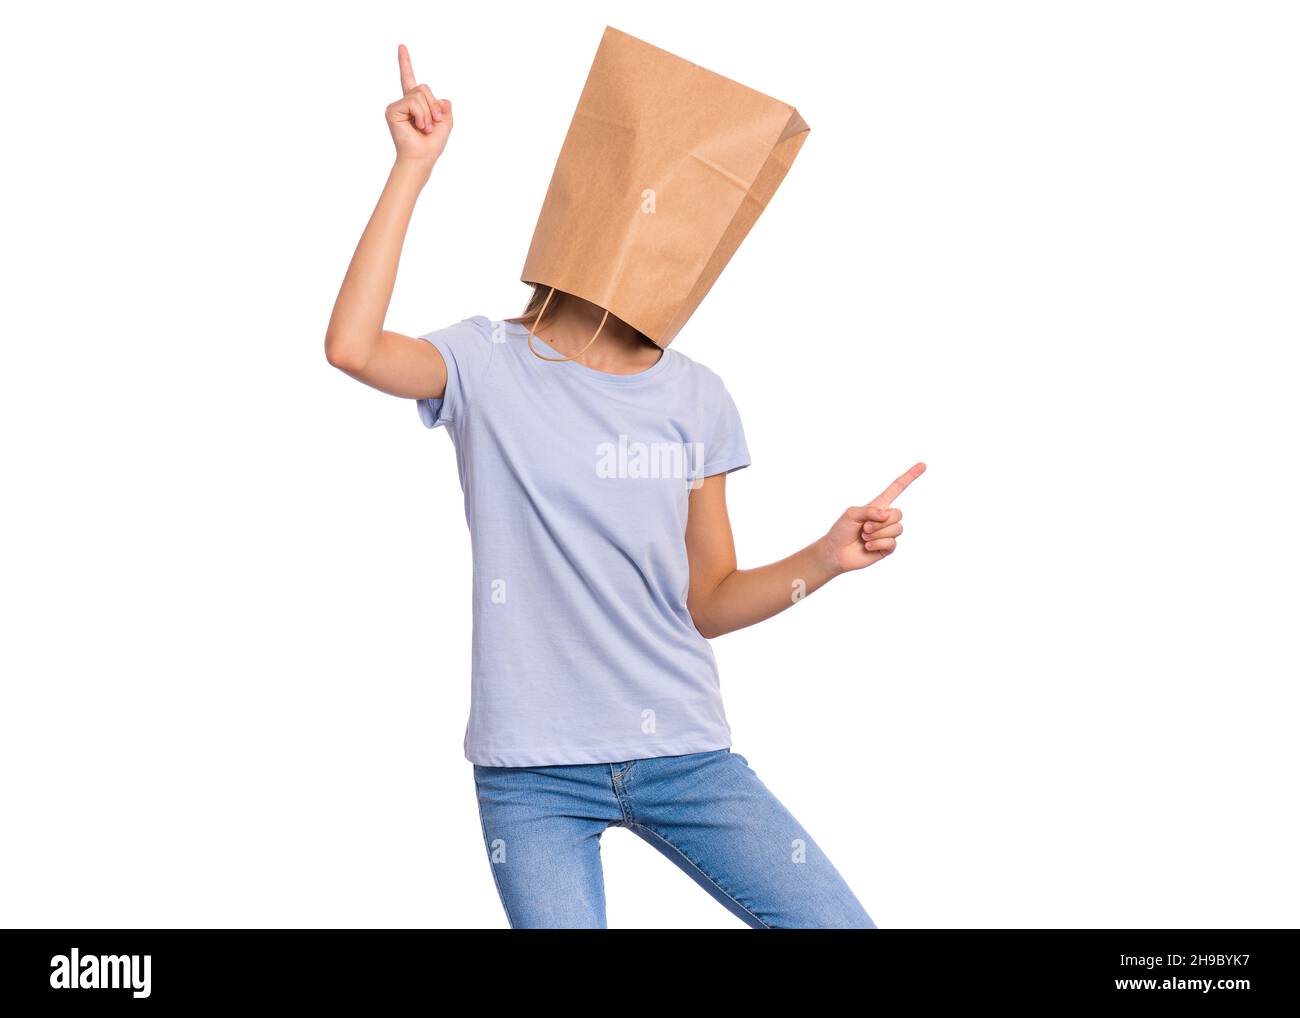 Mädchen mit Papiertüte auf dem Kopf tanzend. Teenager-Cover Gesicht, isoliert auf weißem Hintergrund. Glückliches Kind Zeigen Sie die Finger nach oben. Stockfoto